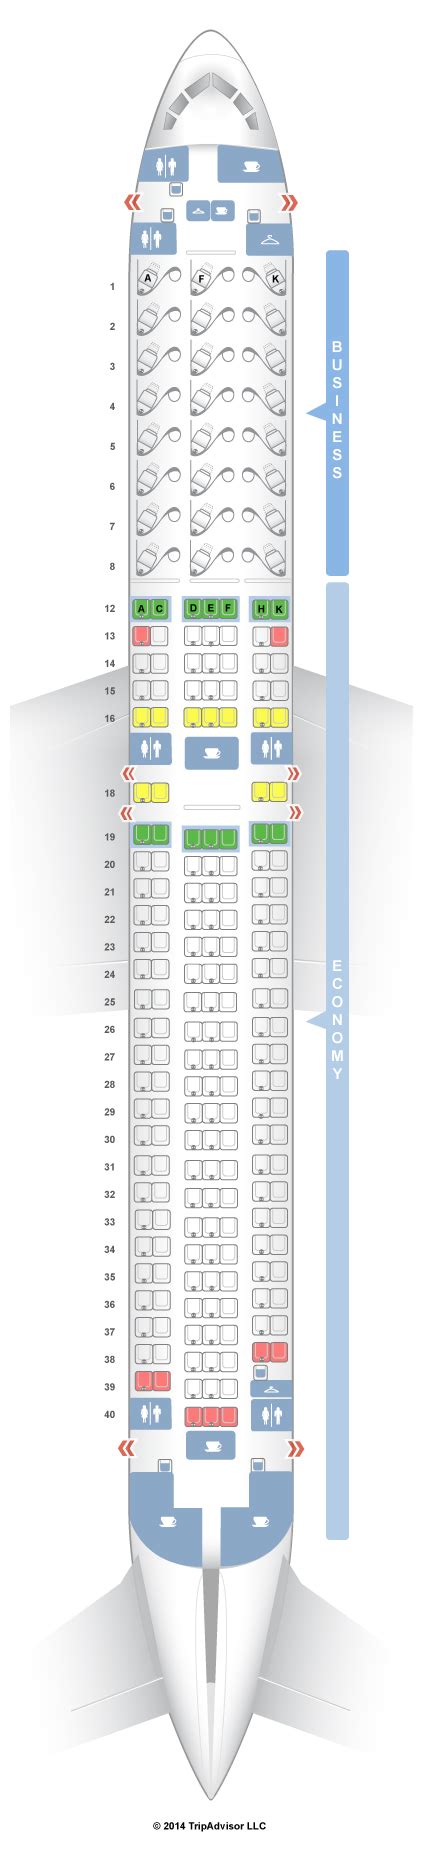 Seatguru Seat Map Air Canada